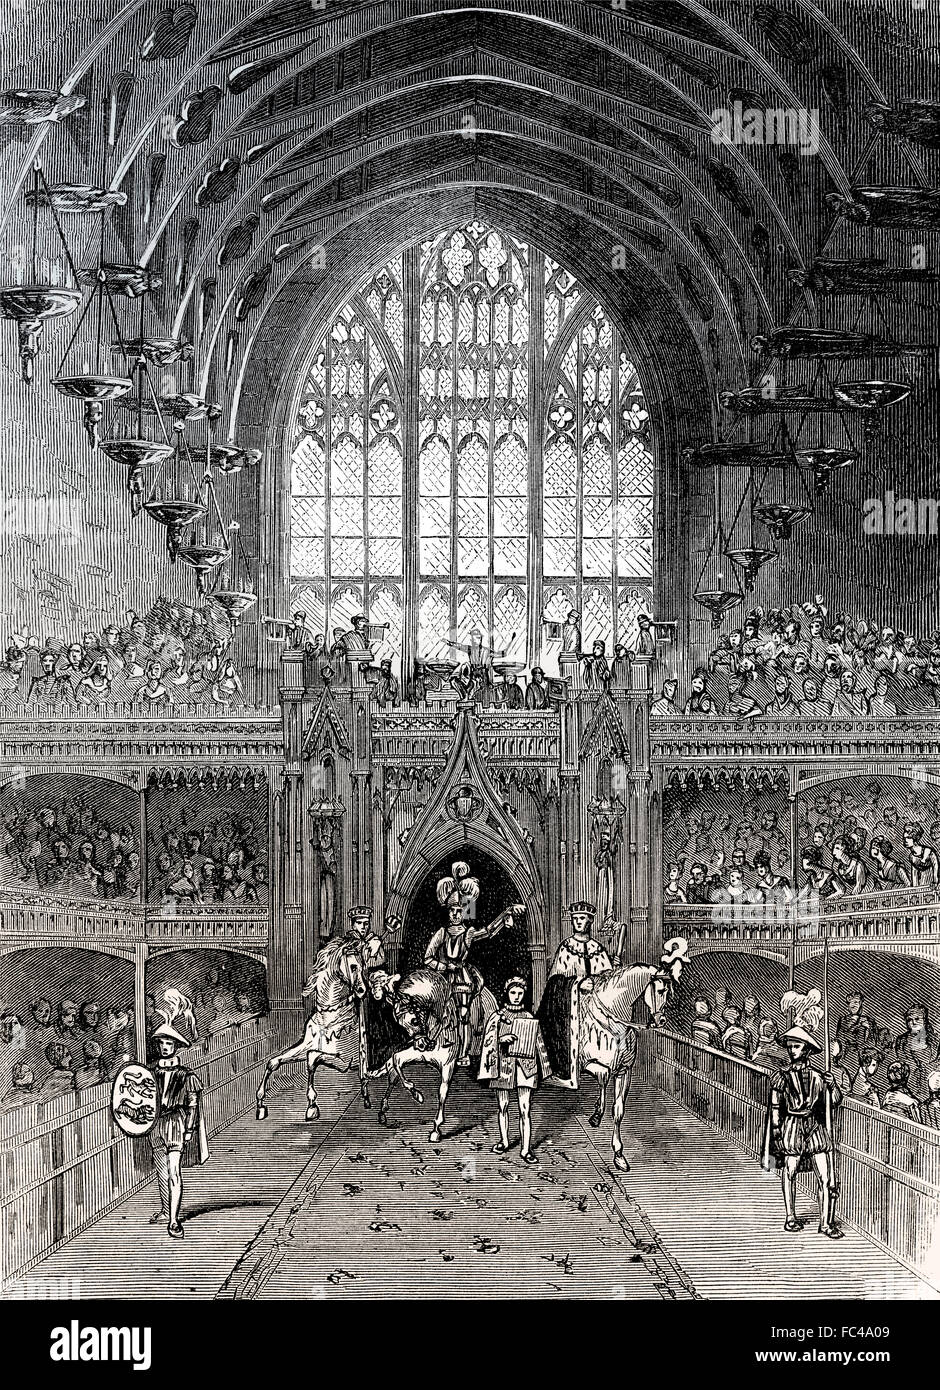 Le Banquet du couronnement de George IV à Westminster Hall, 1820, Londres, Angleterre Banque D'Images